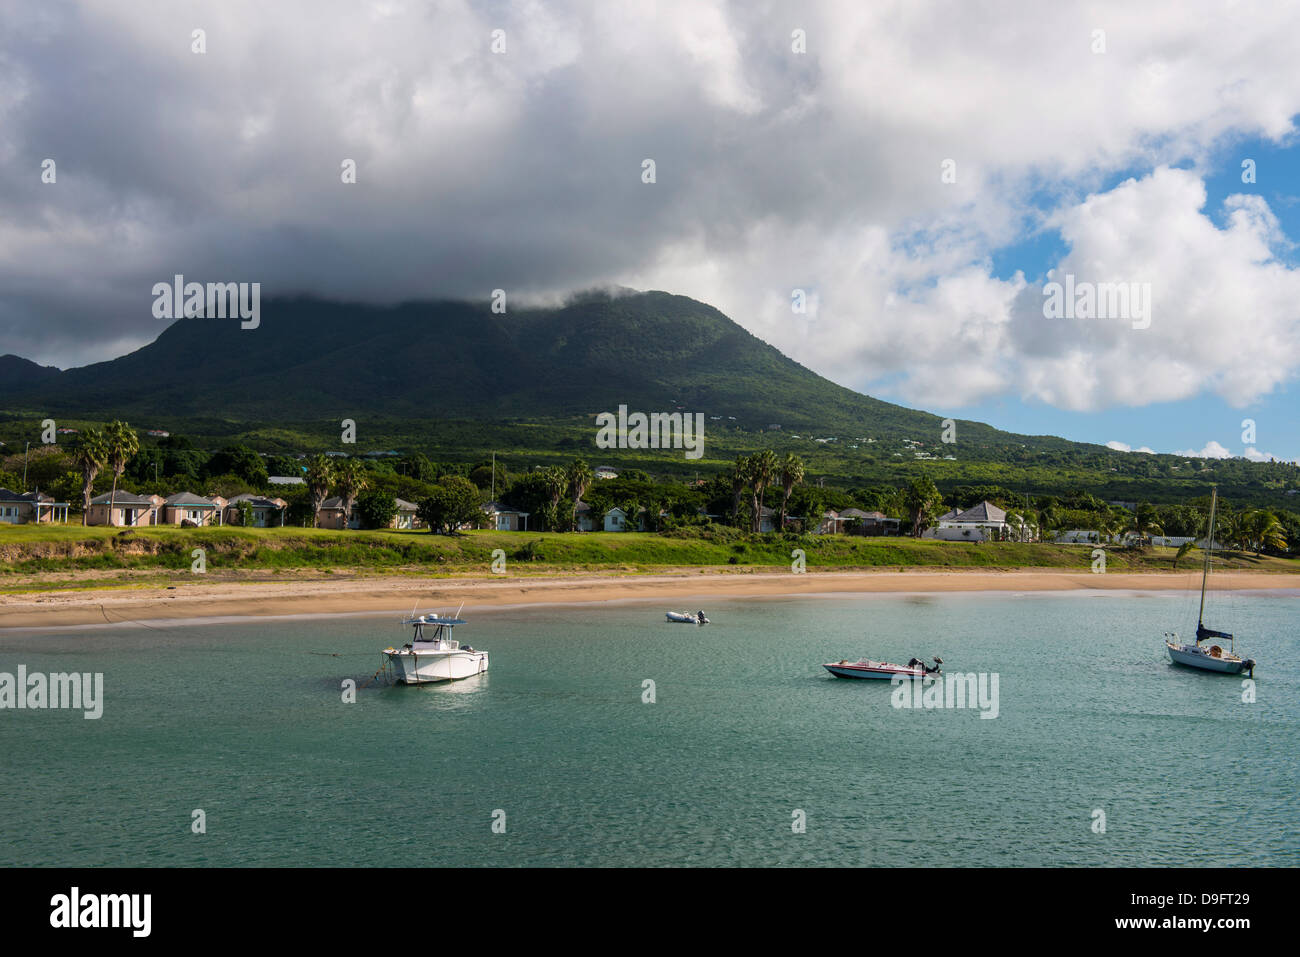 L'île de Nevis, Saint Kitts et Nevis, Iles sous le vent, Antilles, Caraïbes Banque D'Images